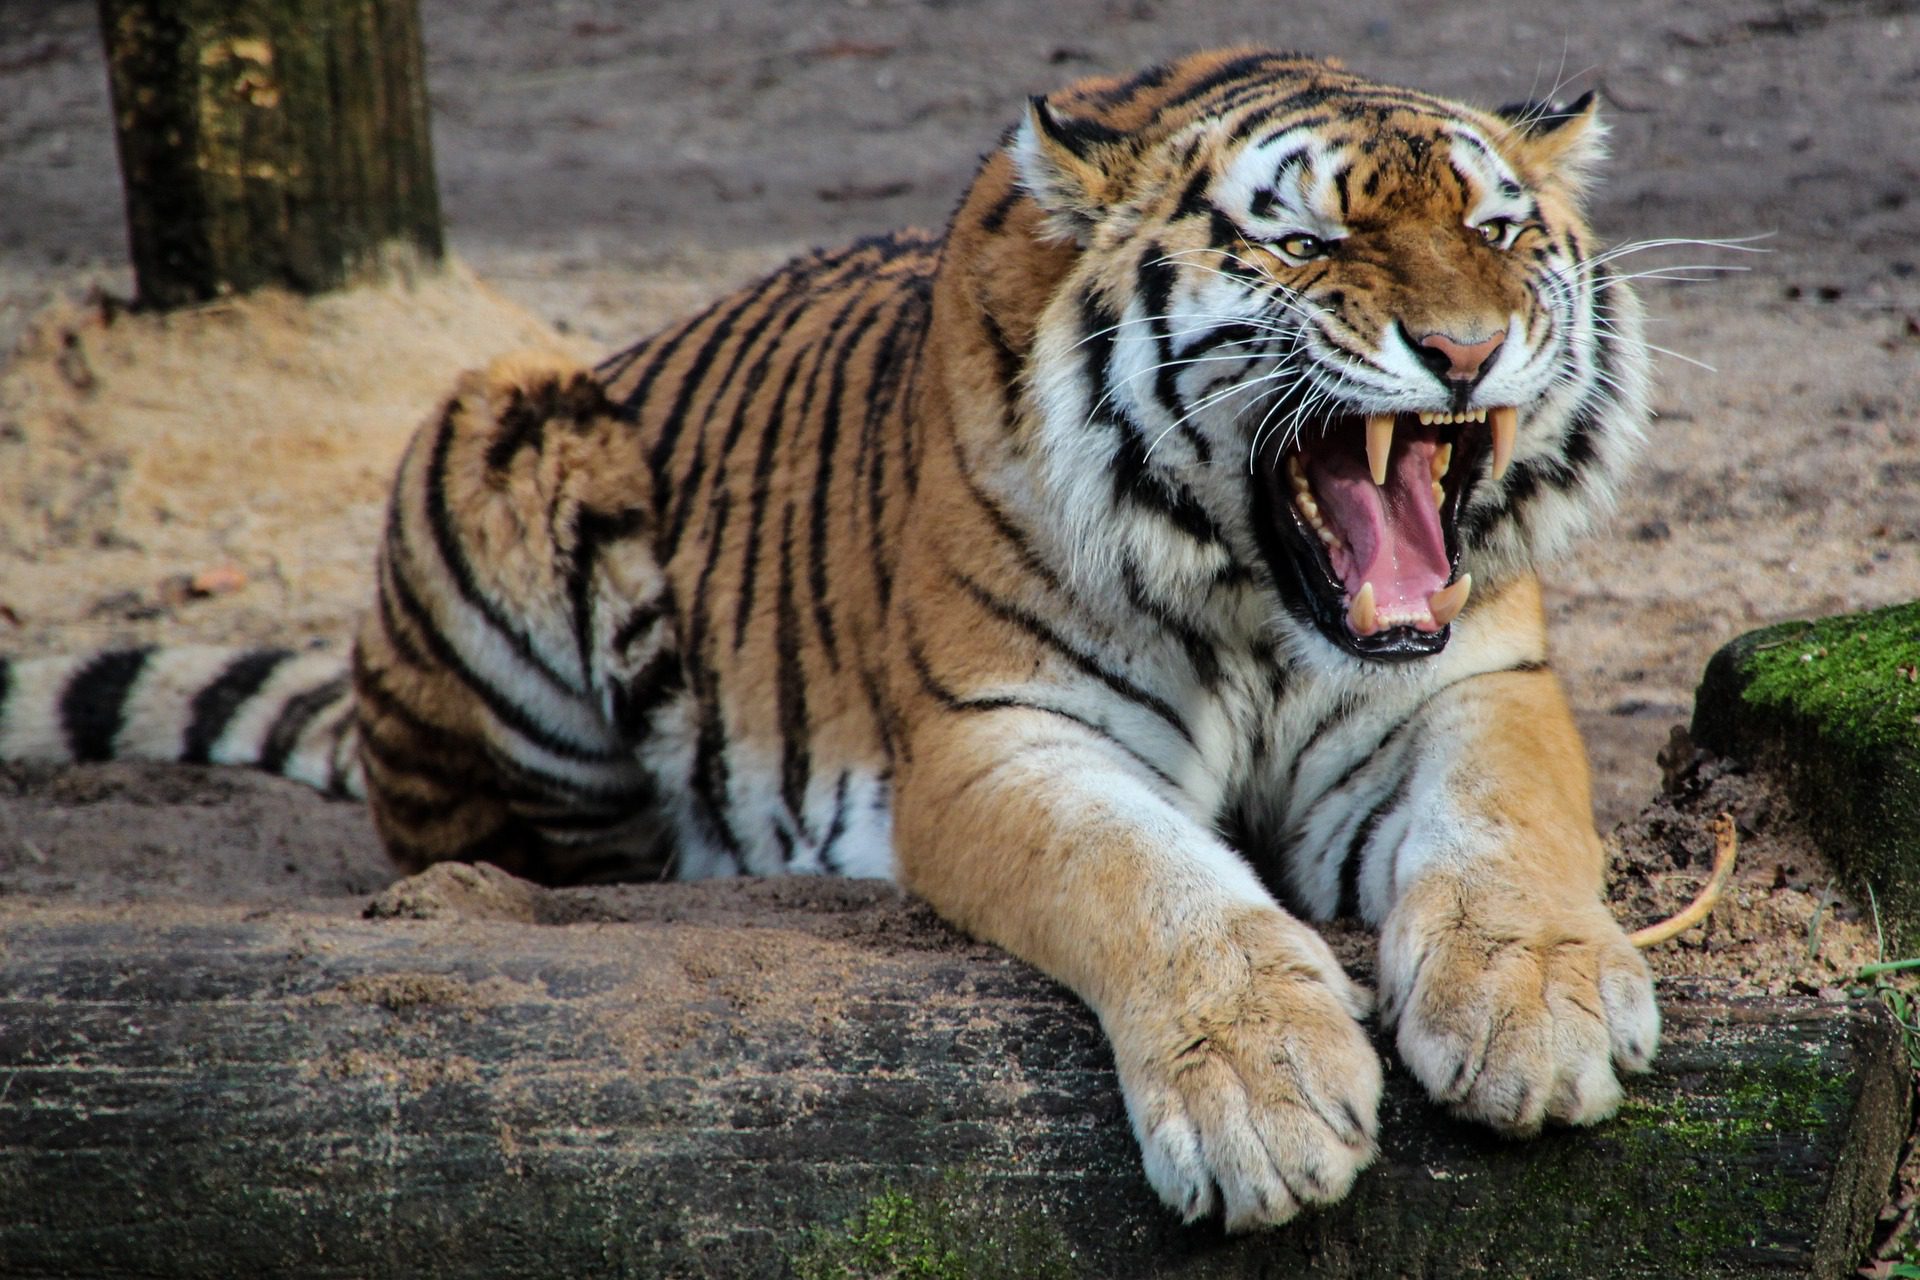 Roar (vocalization) - Wikipedia